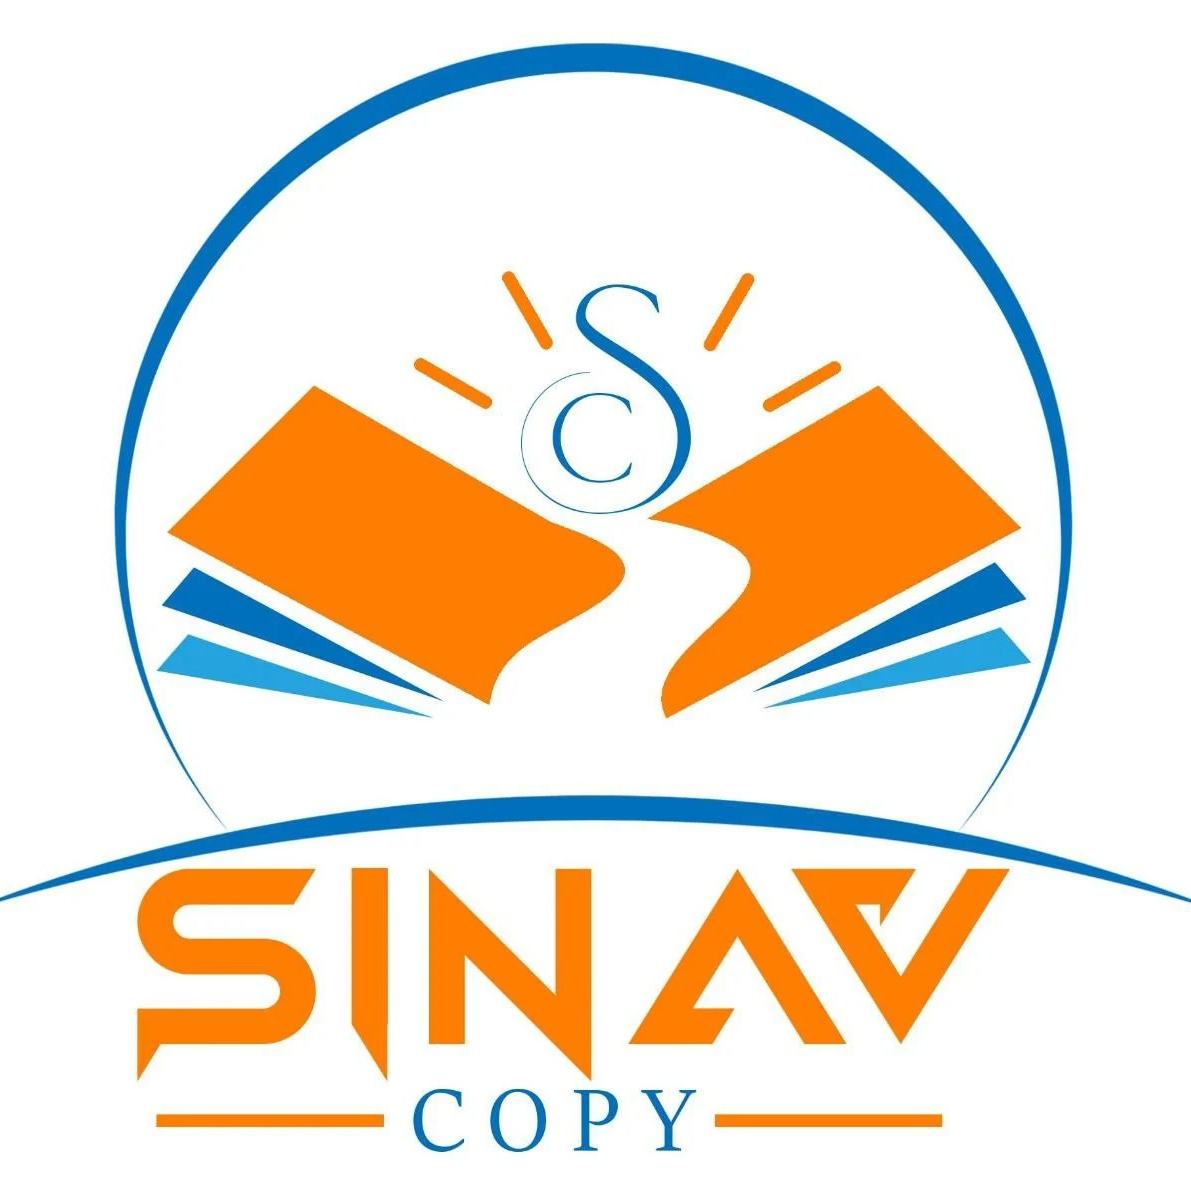 SINAVCOPY – sinav copy